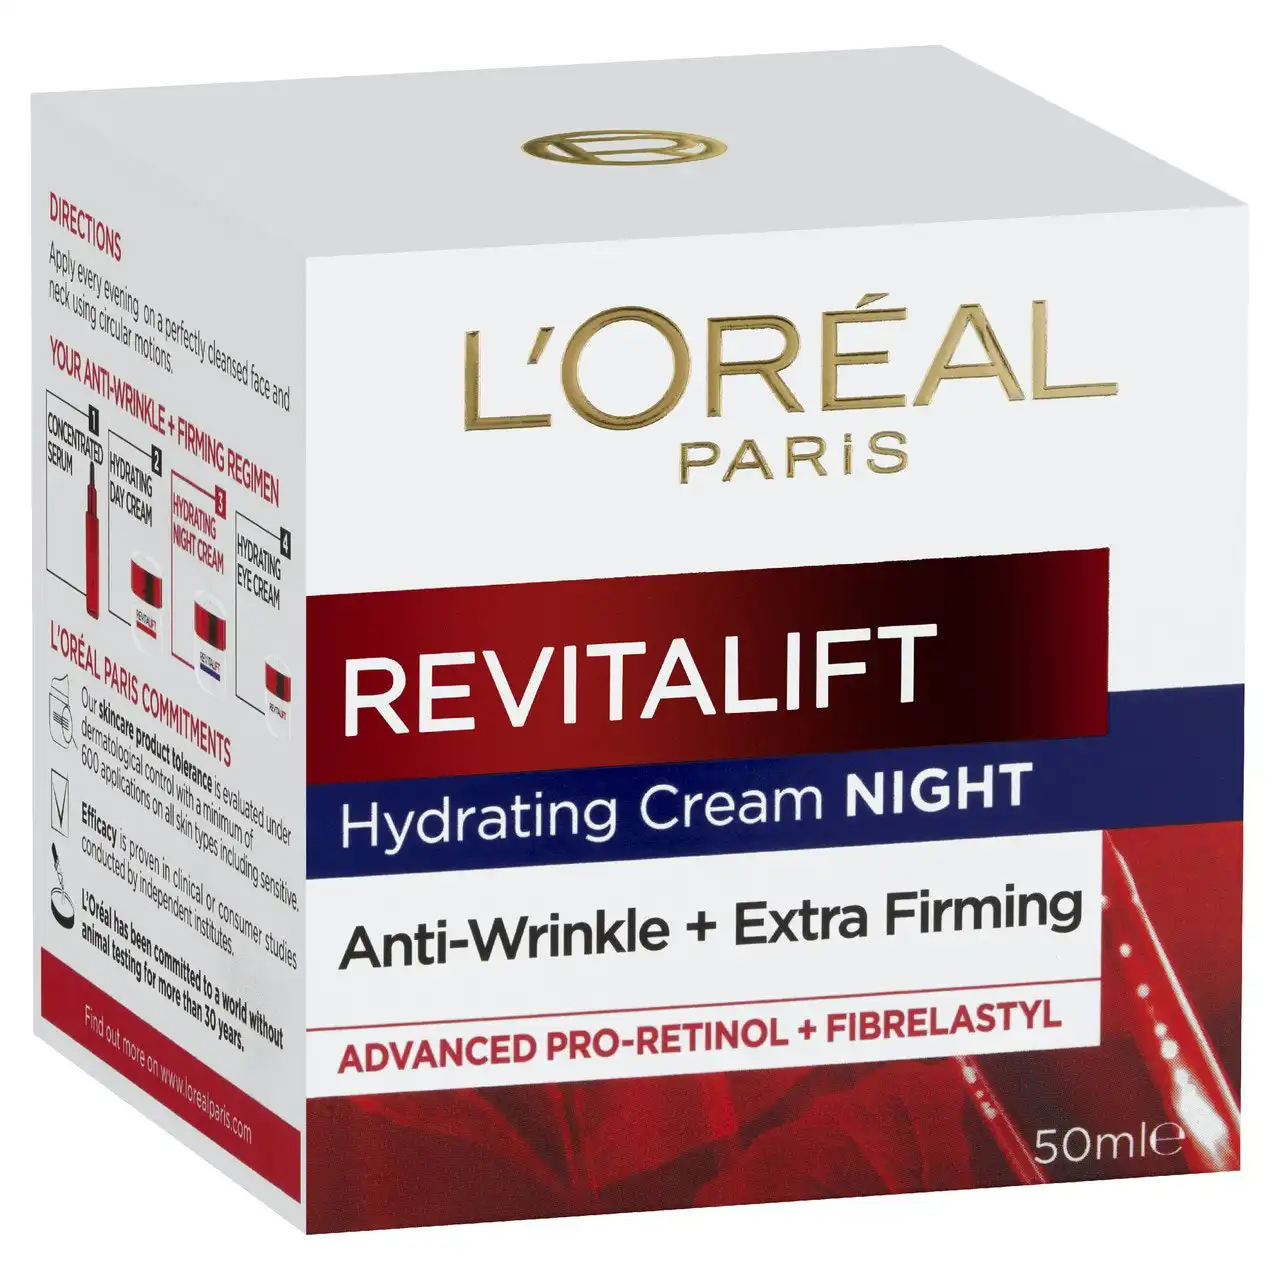 L'Oreal Paris Revitalift Night Cream